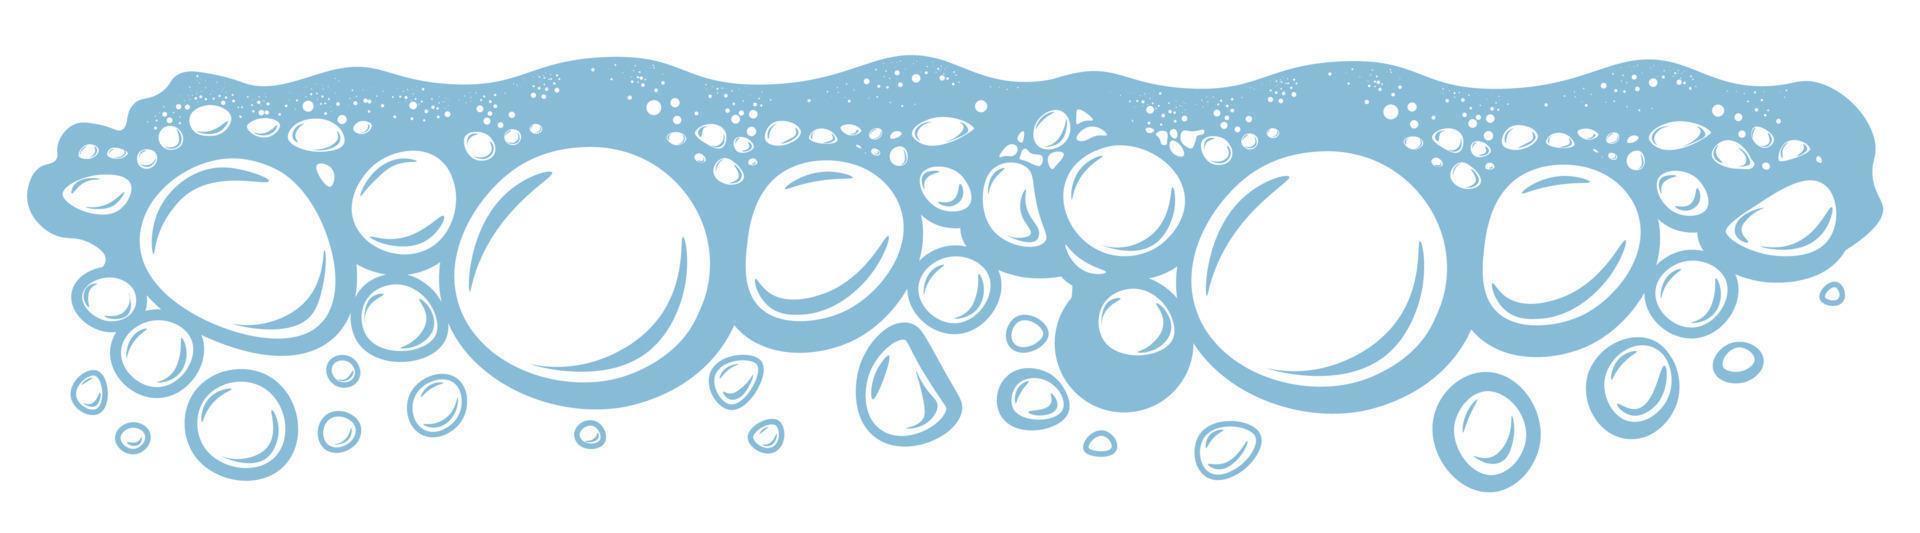 borbulhante água dentro linha, higiene ou lavanderia Sabonete espuma vetor